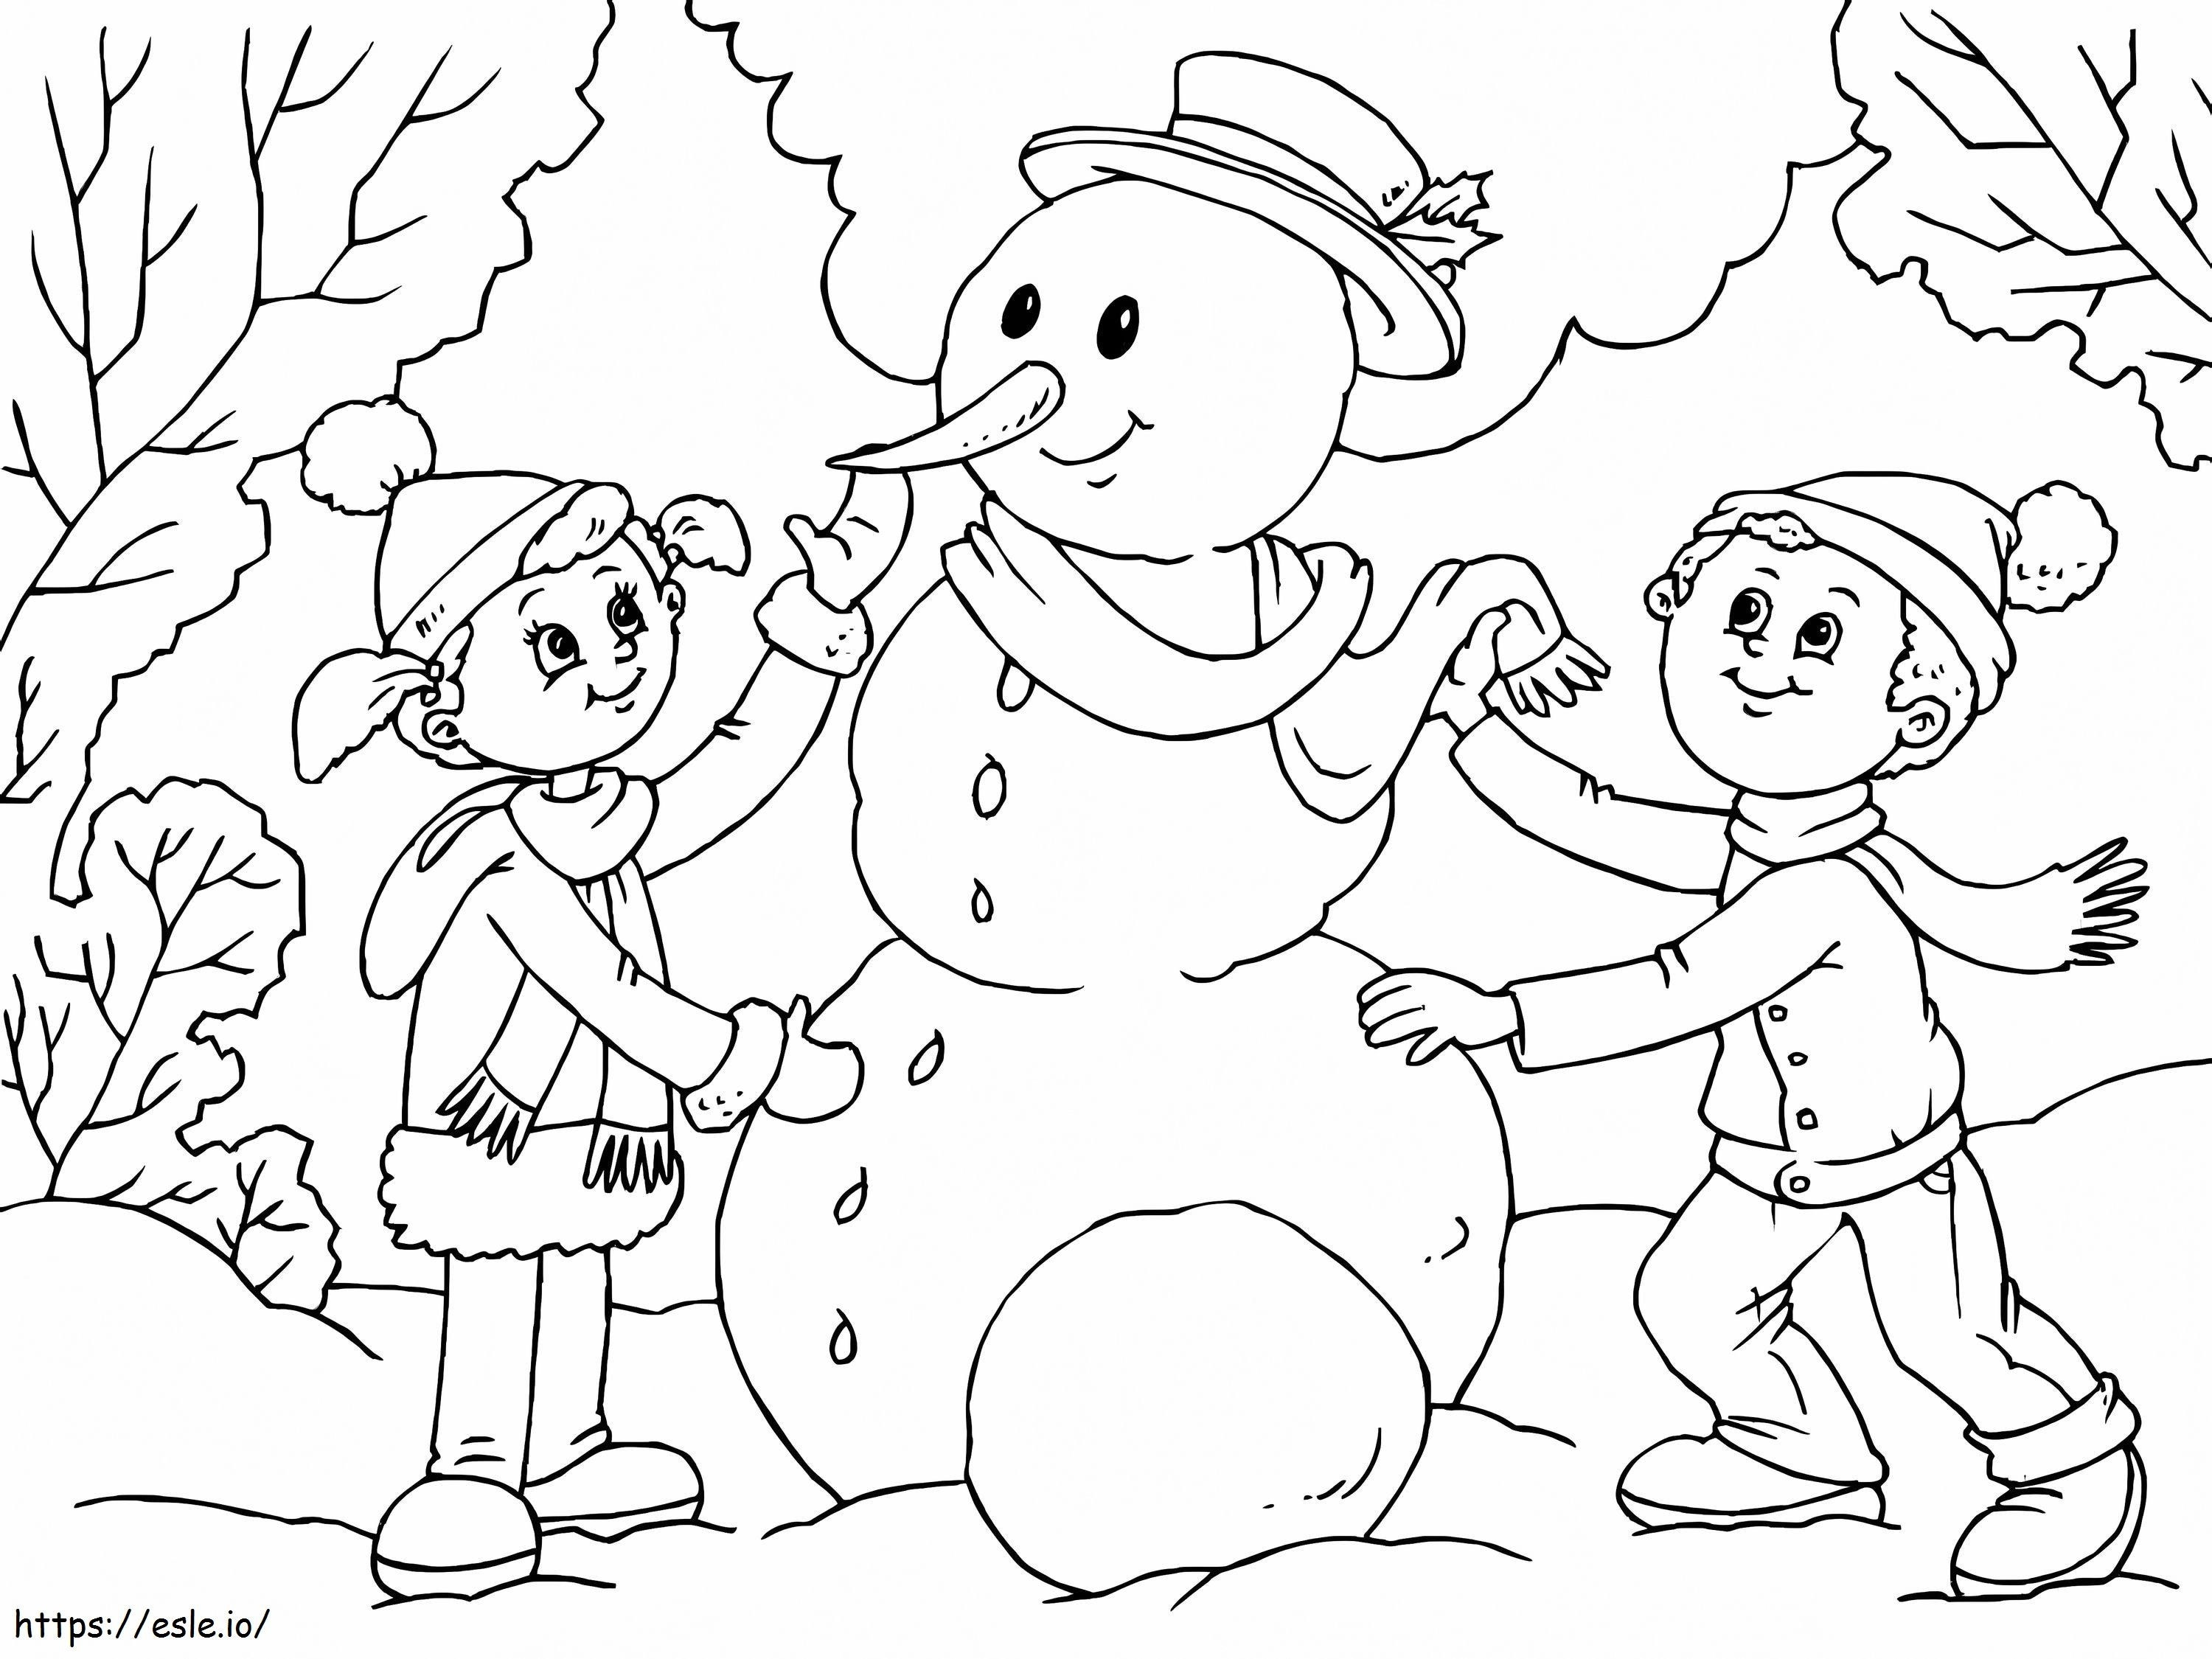 İki Çocuk Kardan Adam Yapıyor boyama